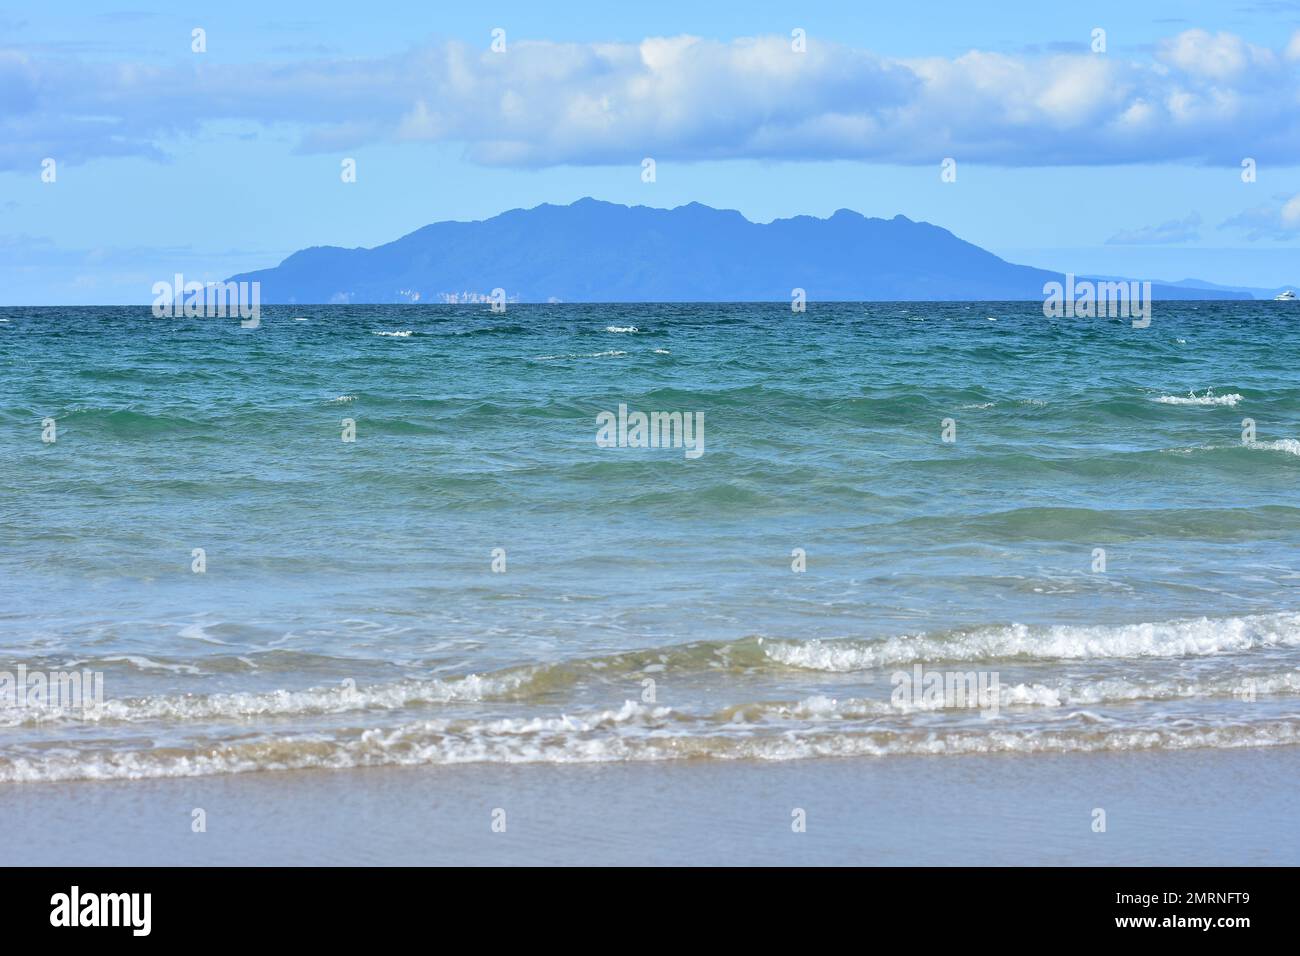 Little Barrier Island dietro la spiaggia di sabbia oceanica con mite surf. Ubicazione: Penisola di Taharanui Nuova Zelanda Foto Stock